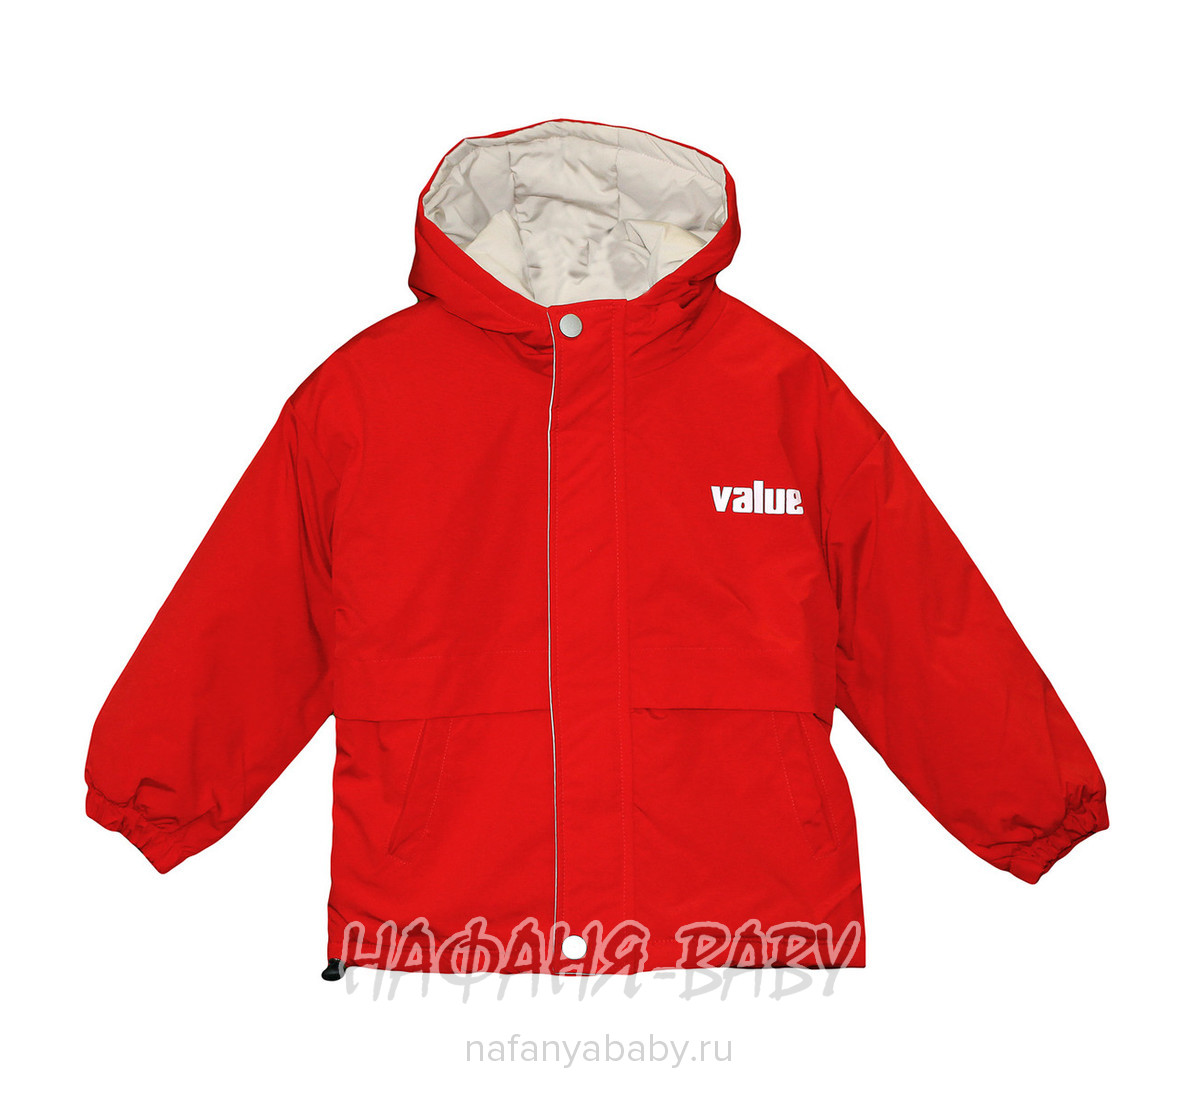 Детская демисезонная куртка W.G.J. арт: 1970, 5-9 лет, 1-4 года, цвет красный, оптом Китай (Пекин)